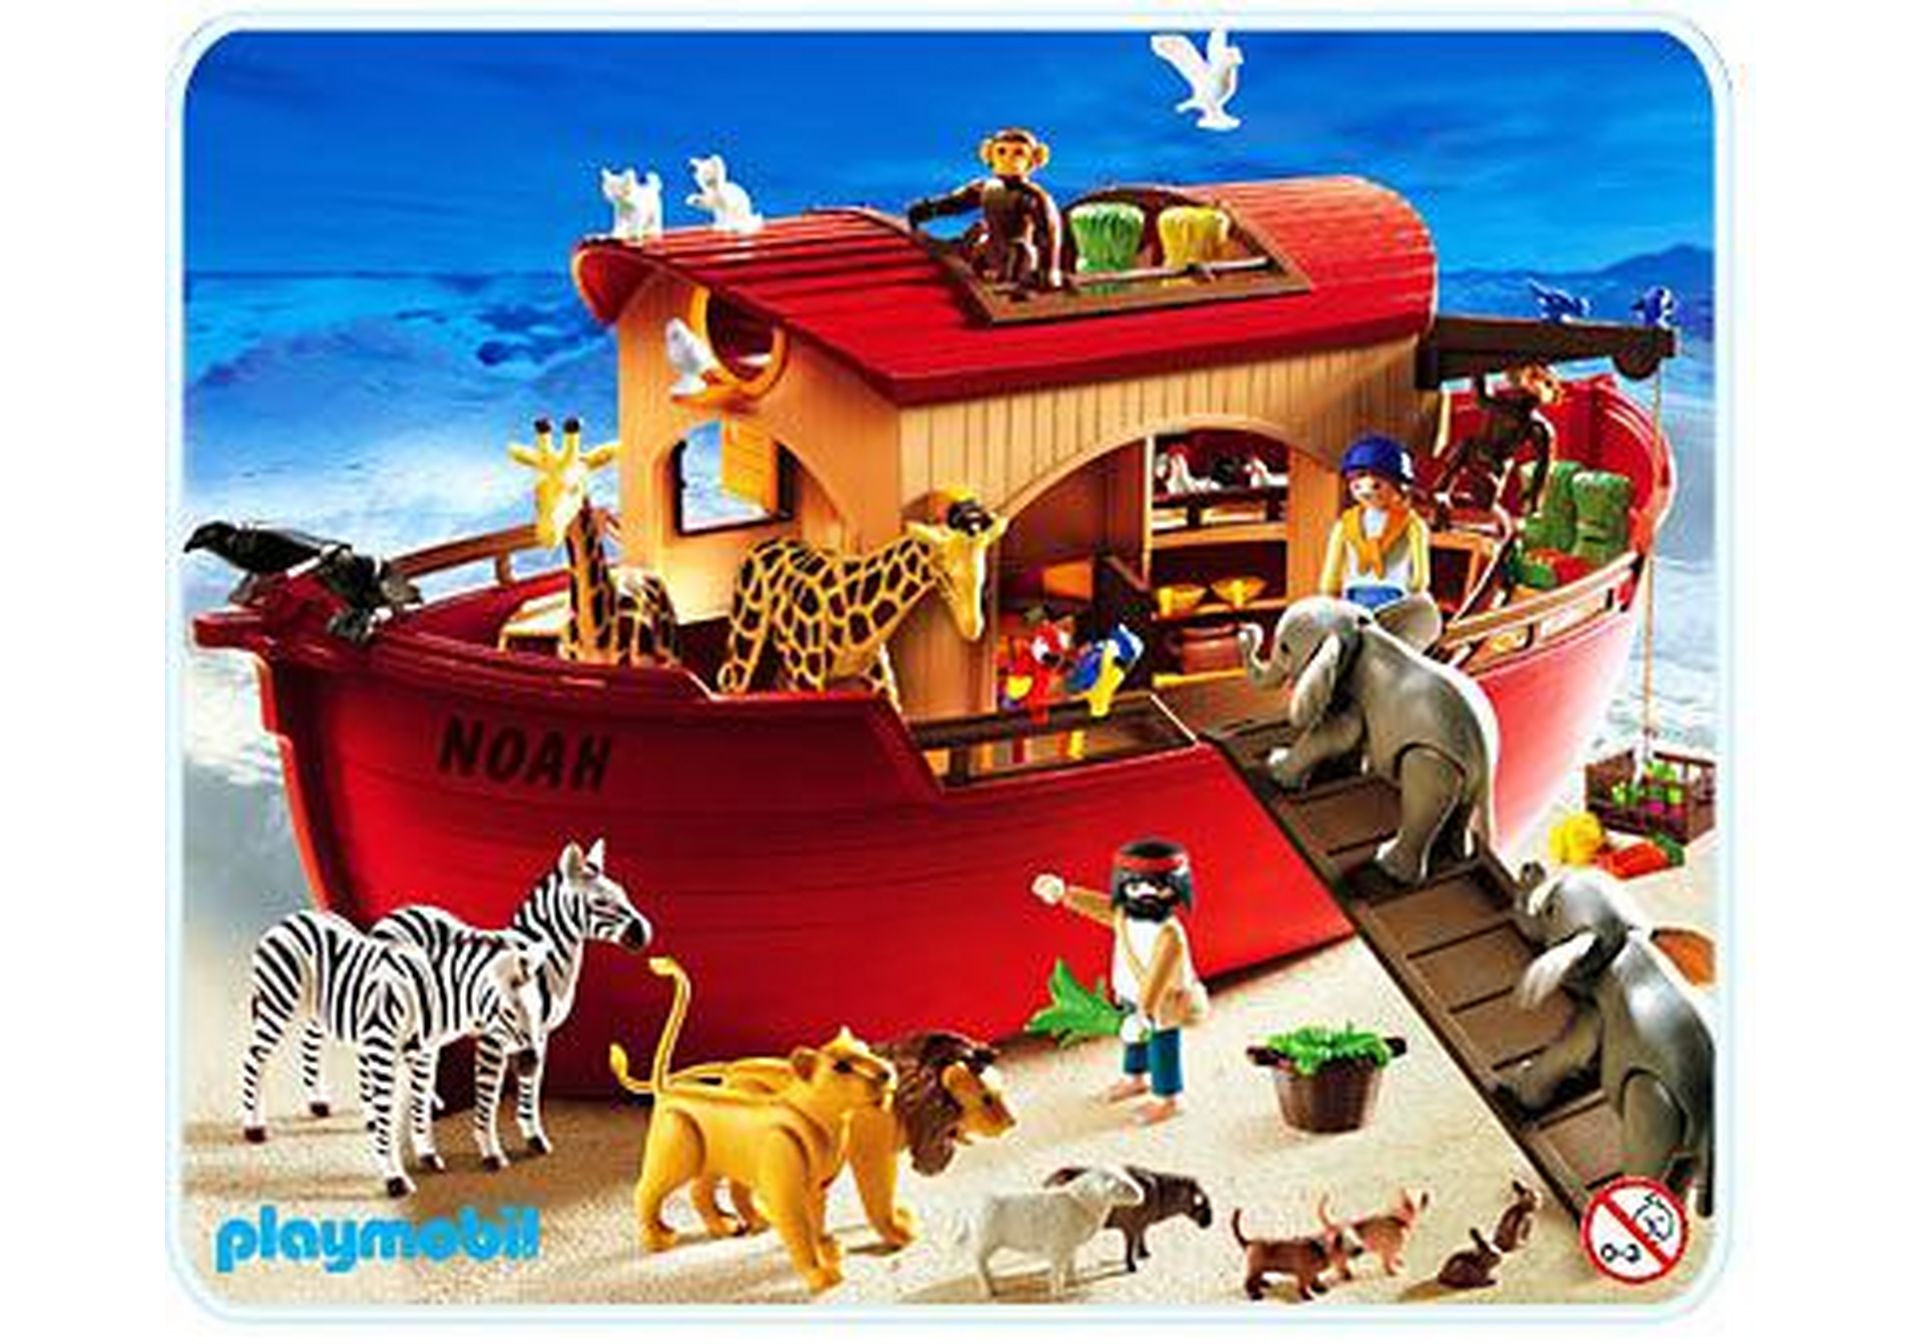 animaux, bateau 0154 sympa piece arche de noé 3255  playmobil 